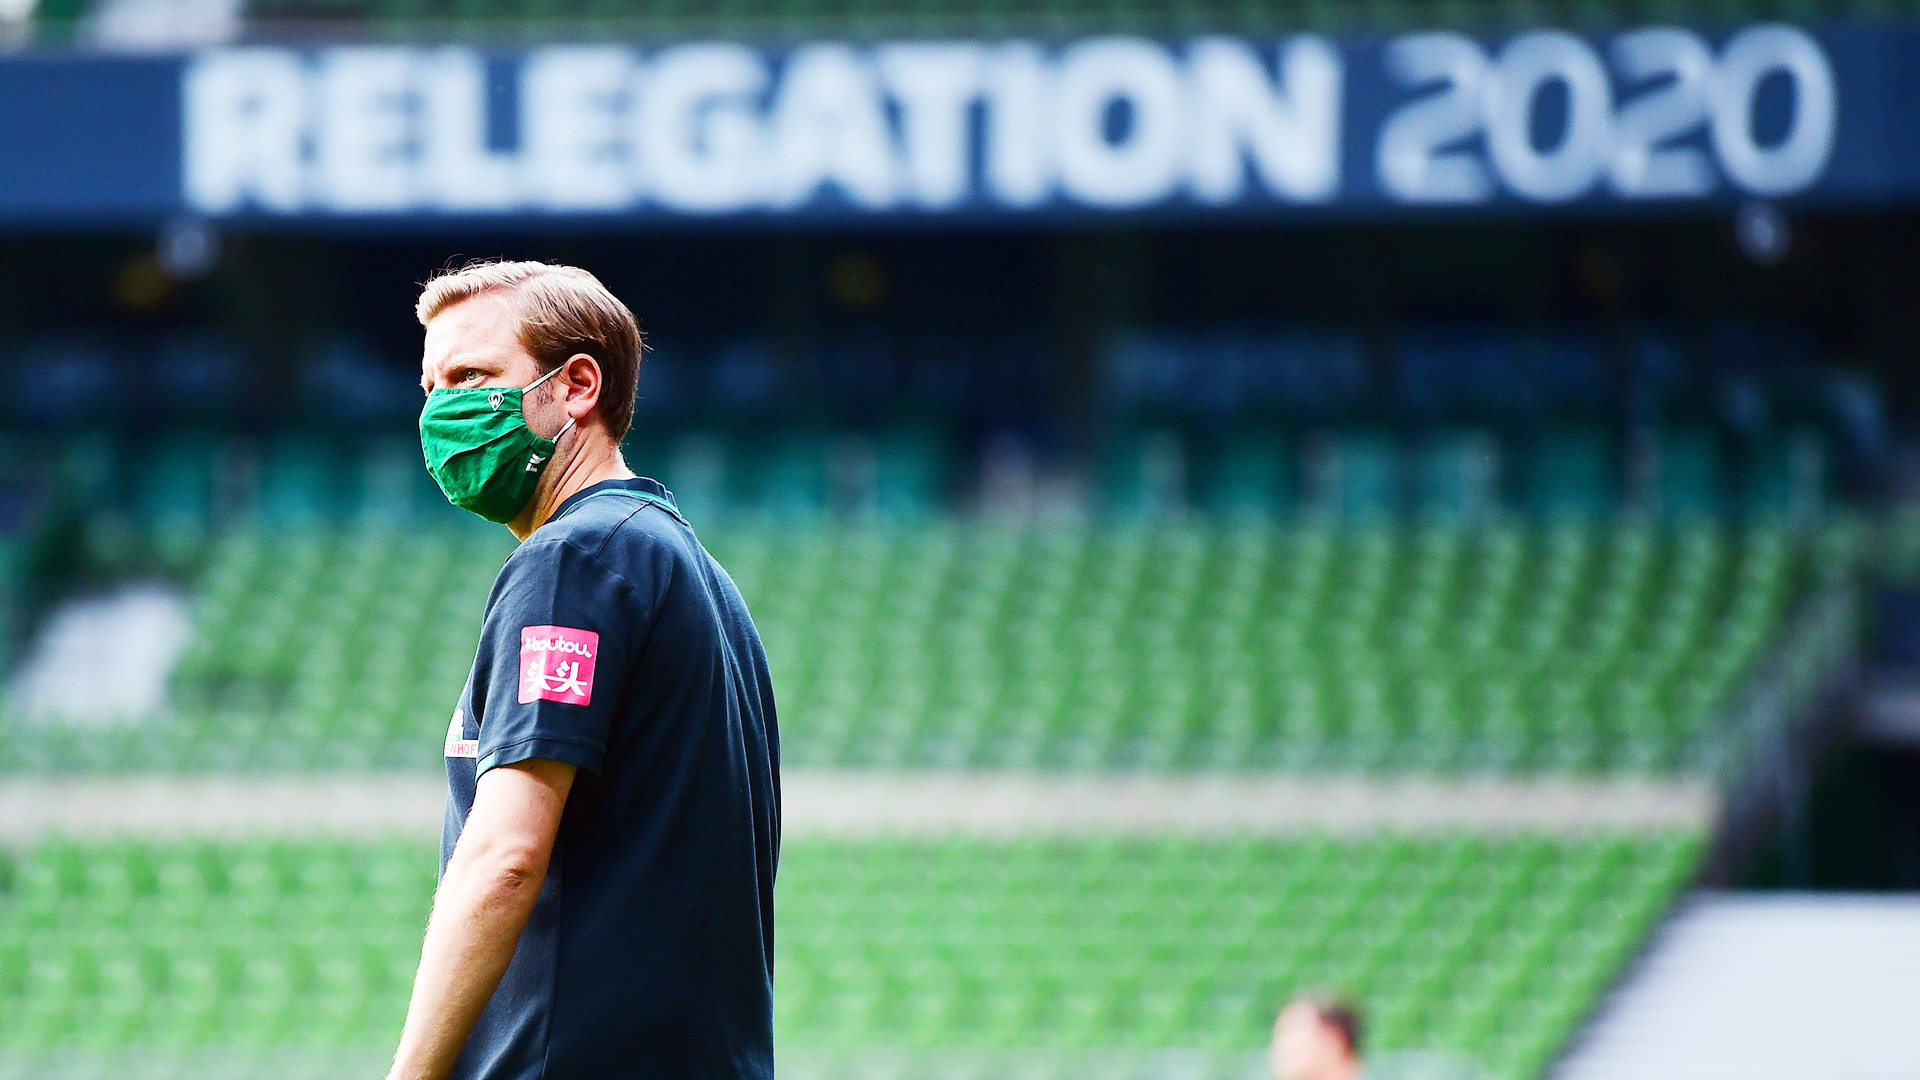 Werder Bremens Trainer Florian Kohfeldt vor einem großen Schild mit der Aufschrift "Relegation 2020".